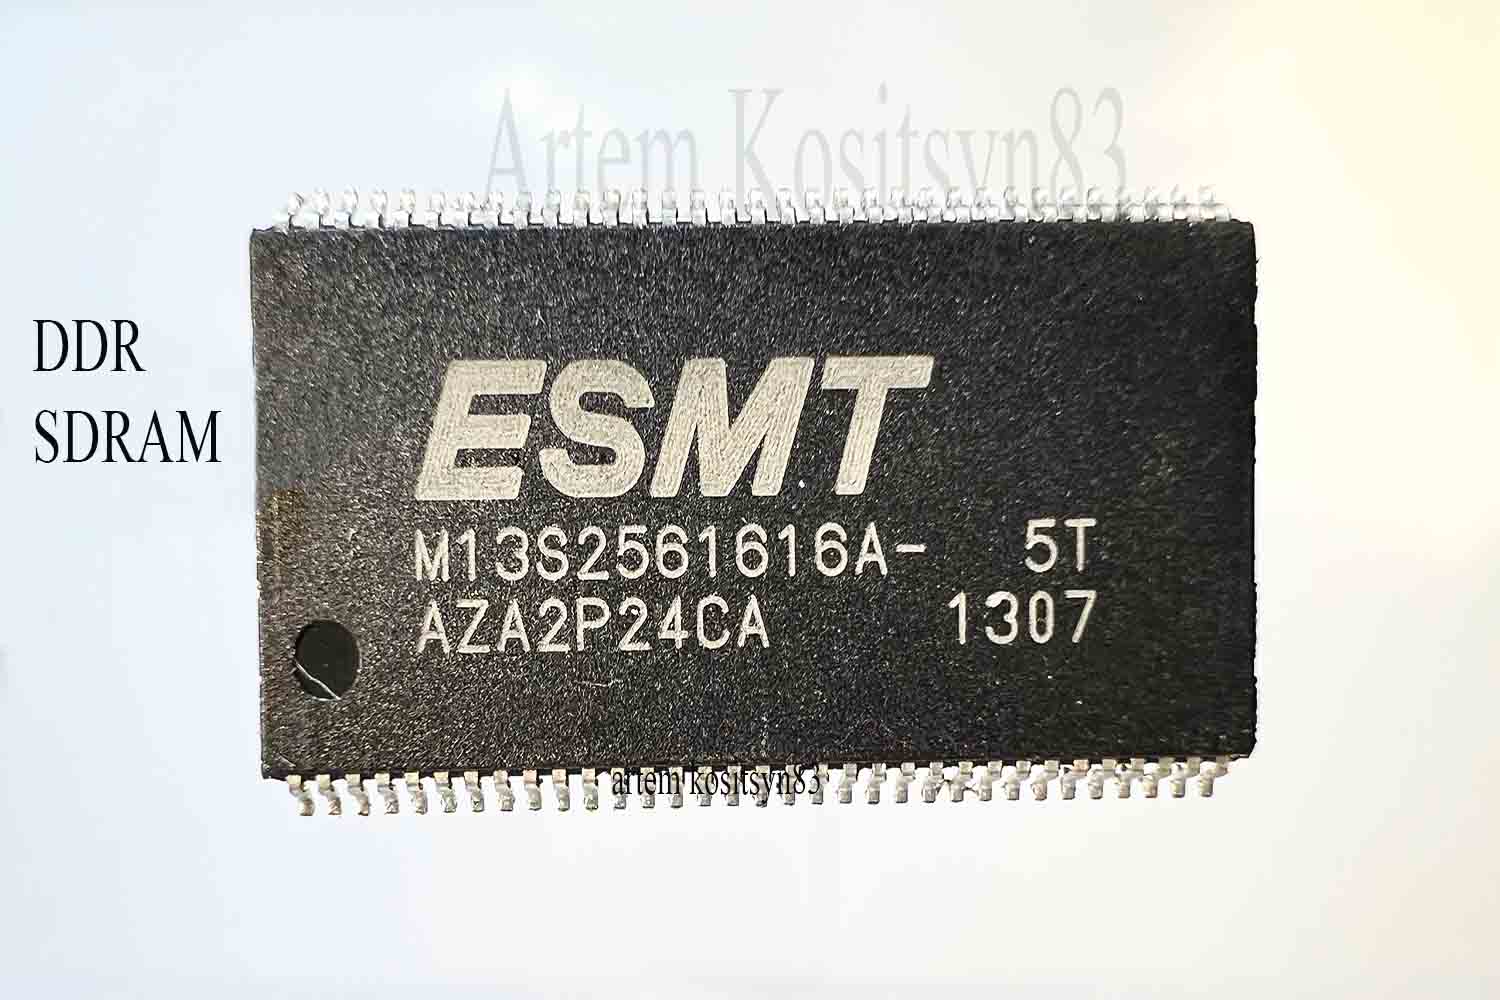 Подробнее о статье M13S2561616A.DDR SDRAM 4Mb×16Bit×4banks.Datasheet